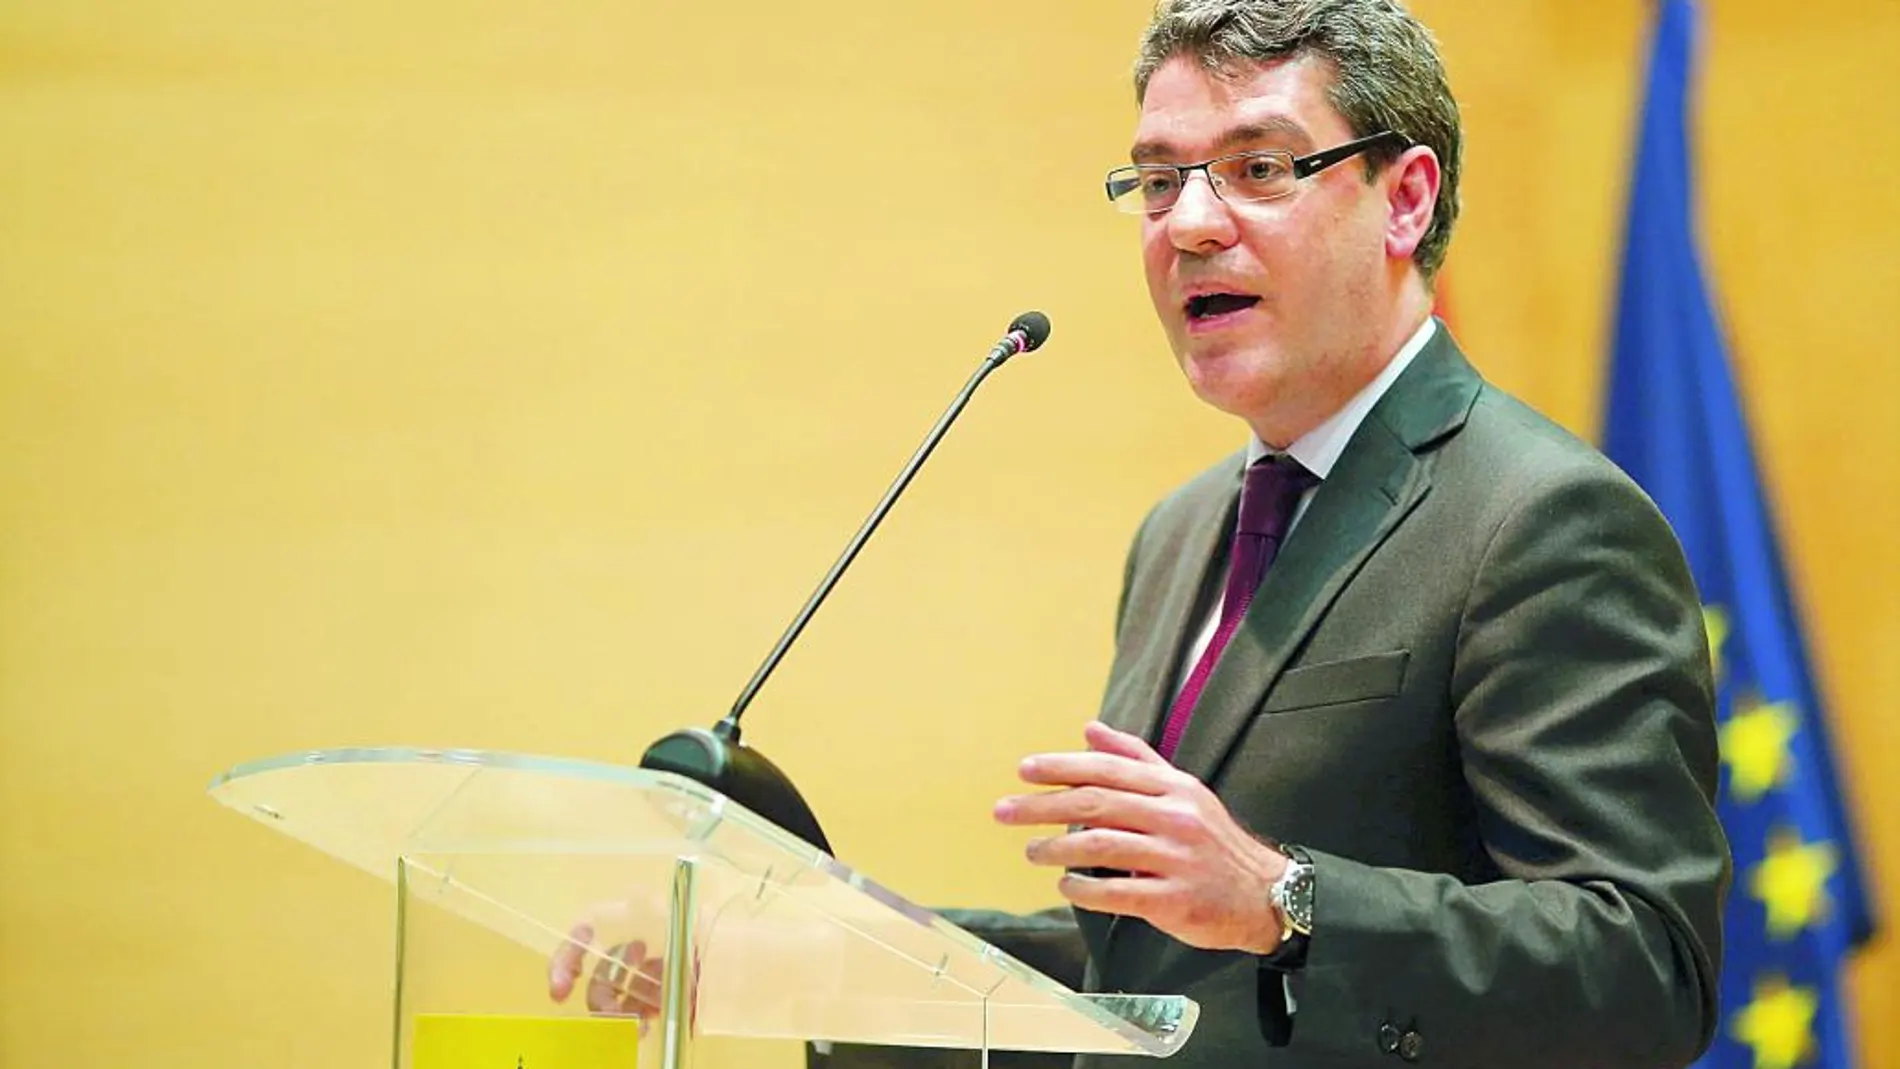 El ministro de Energía, Álvaro Nadal, defiende que España debe apostar por volver a crecer en renovables tras haber alcanzado la rentabilidad del sector eléctrico